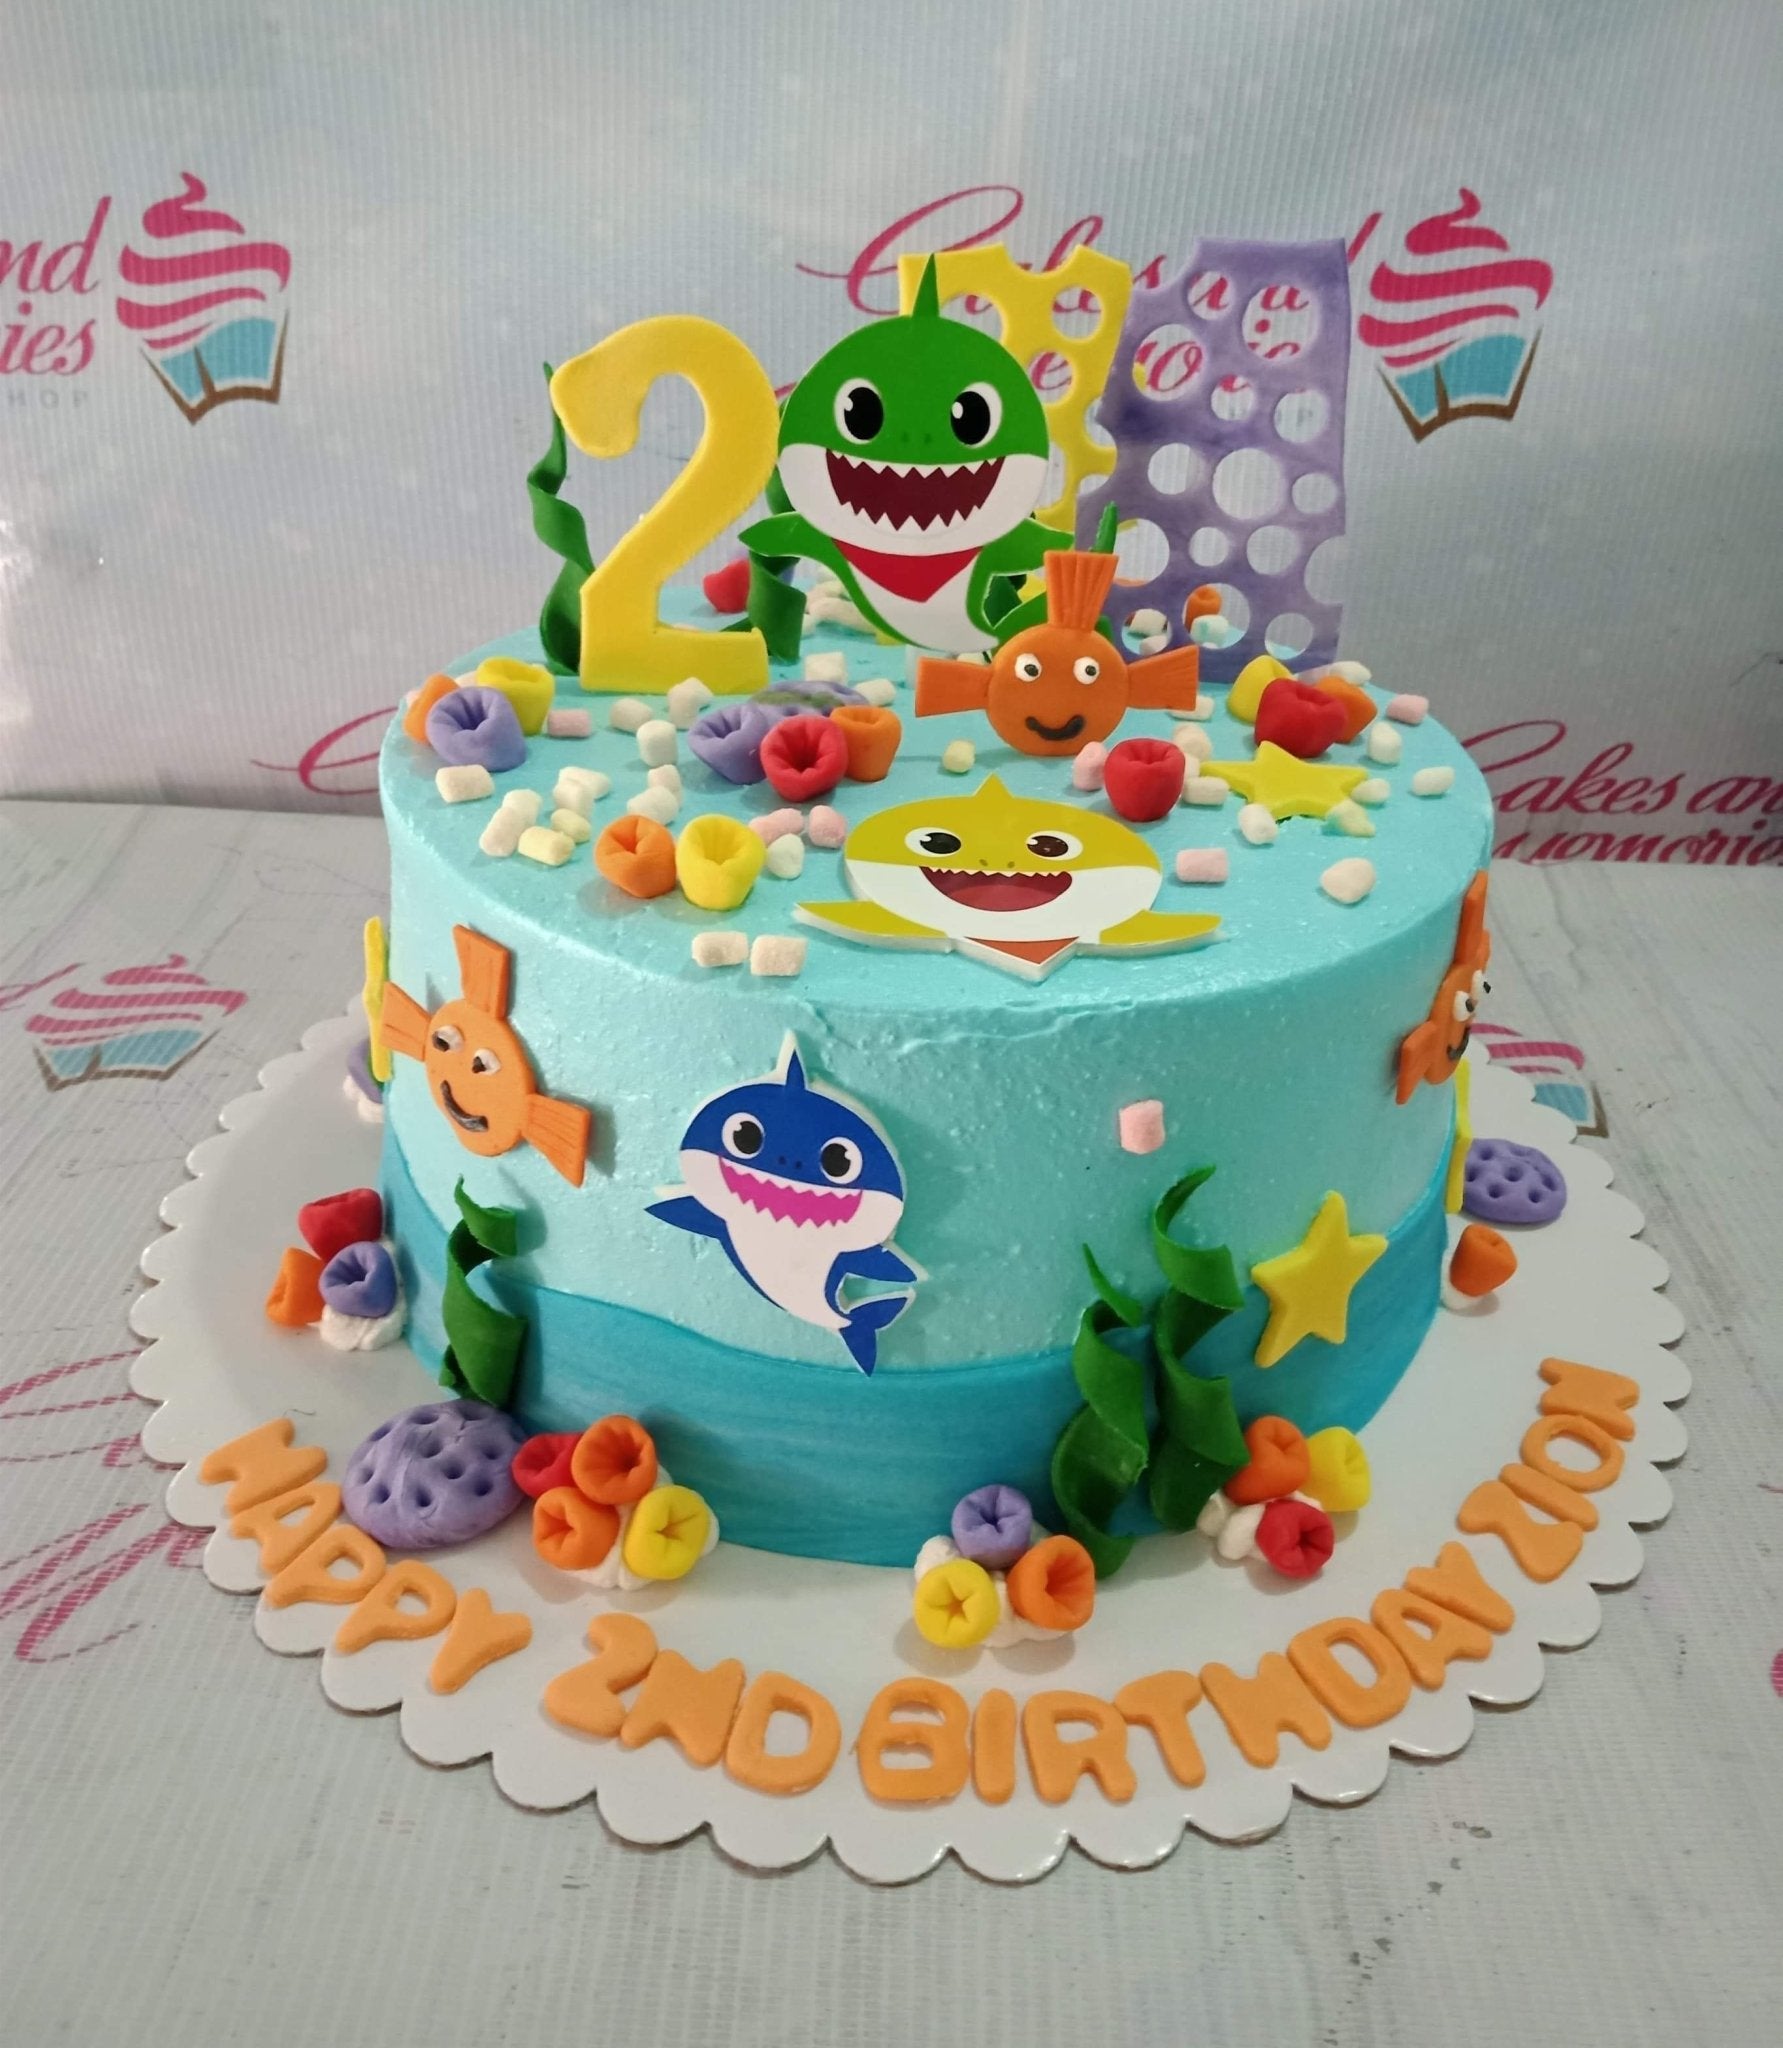 Baby Shark Birthday Cake Tutorial - YouTube